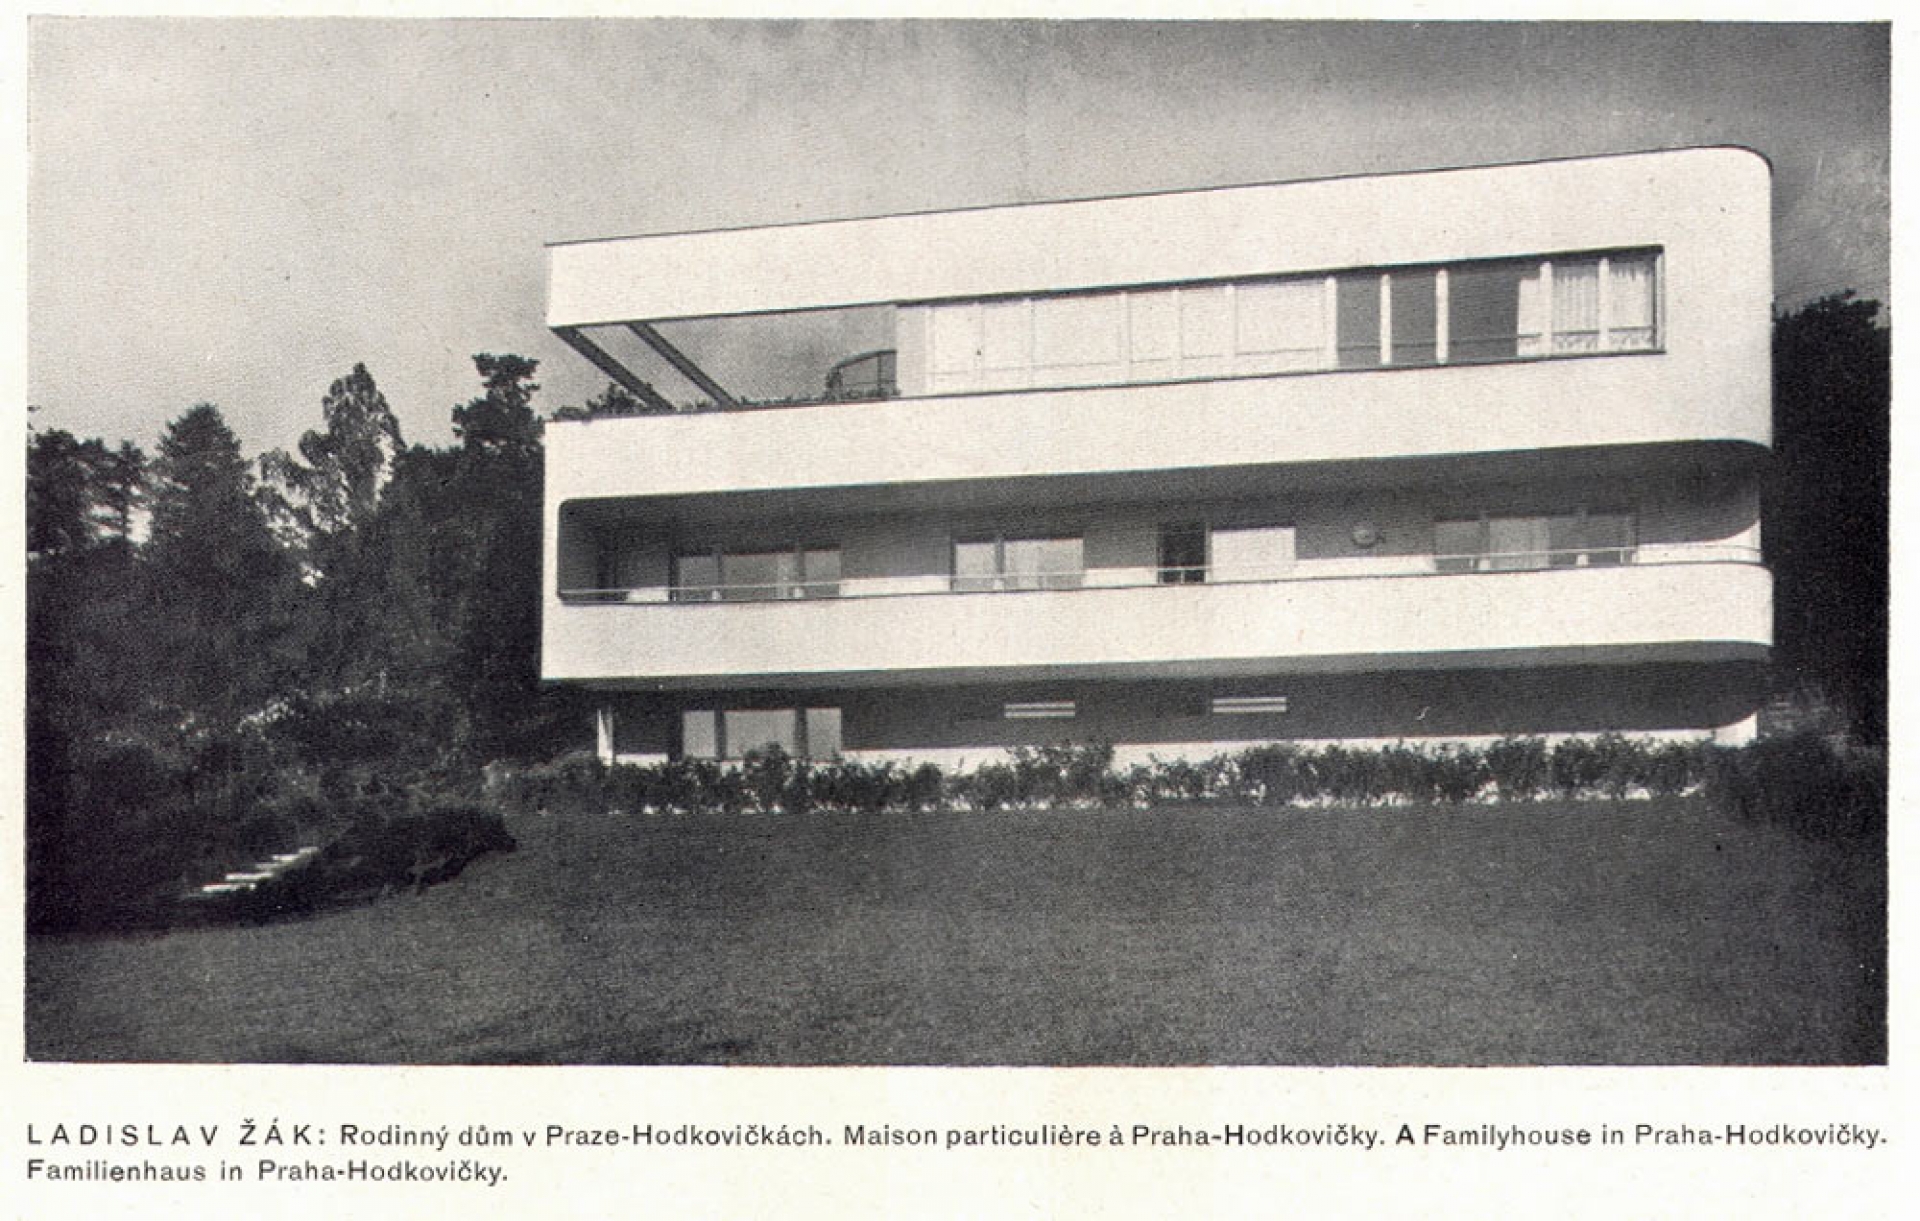 Fričova vila v Praze-Hodkovičkách byla vystavěna v letech 1934-1935 podle návrhu architekta L. Žáka